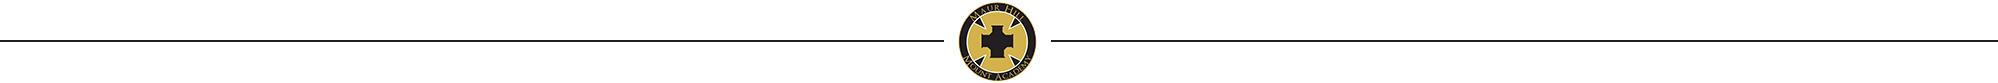 Maur Hill logo divider